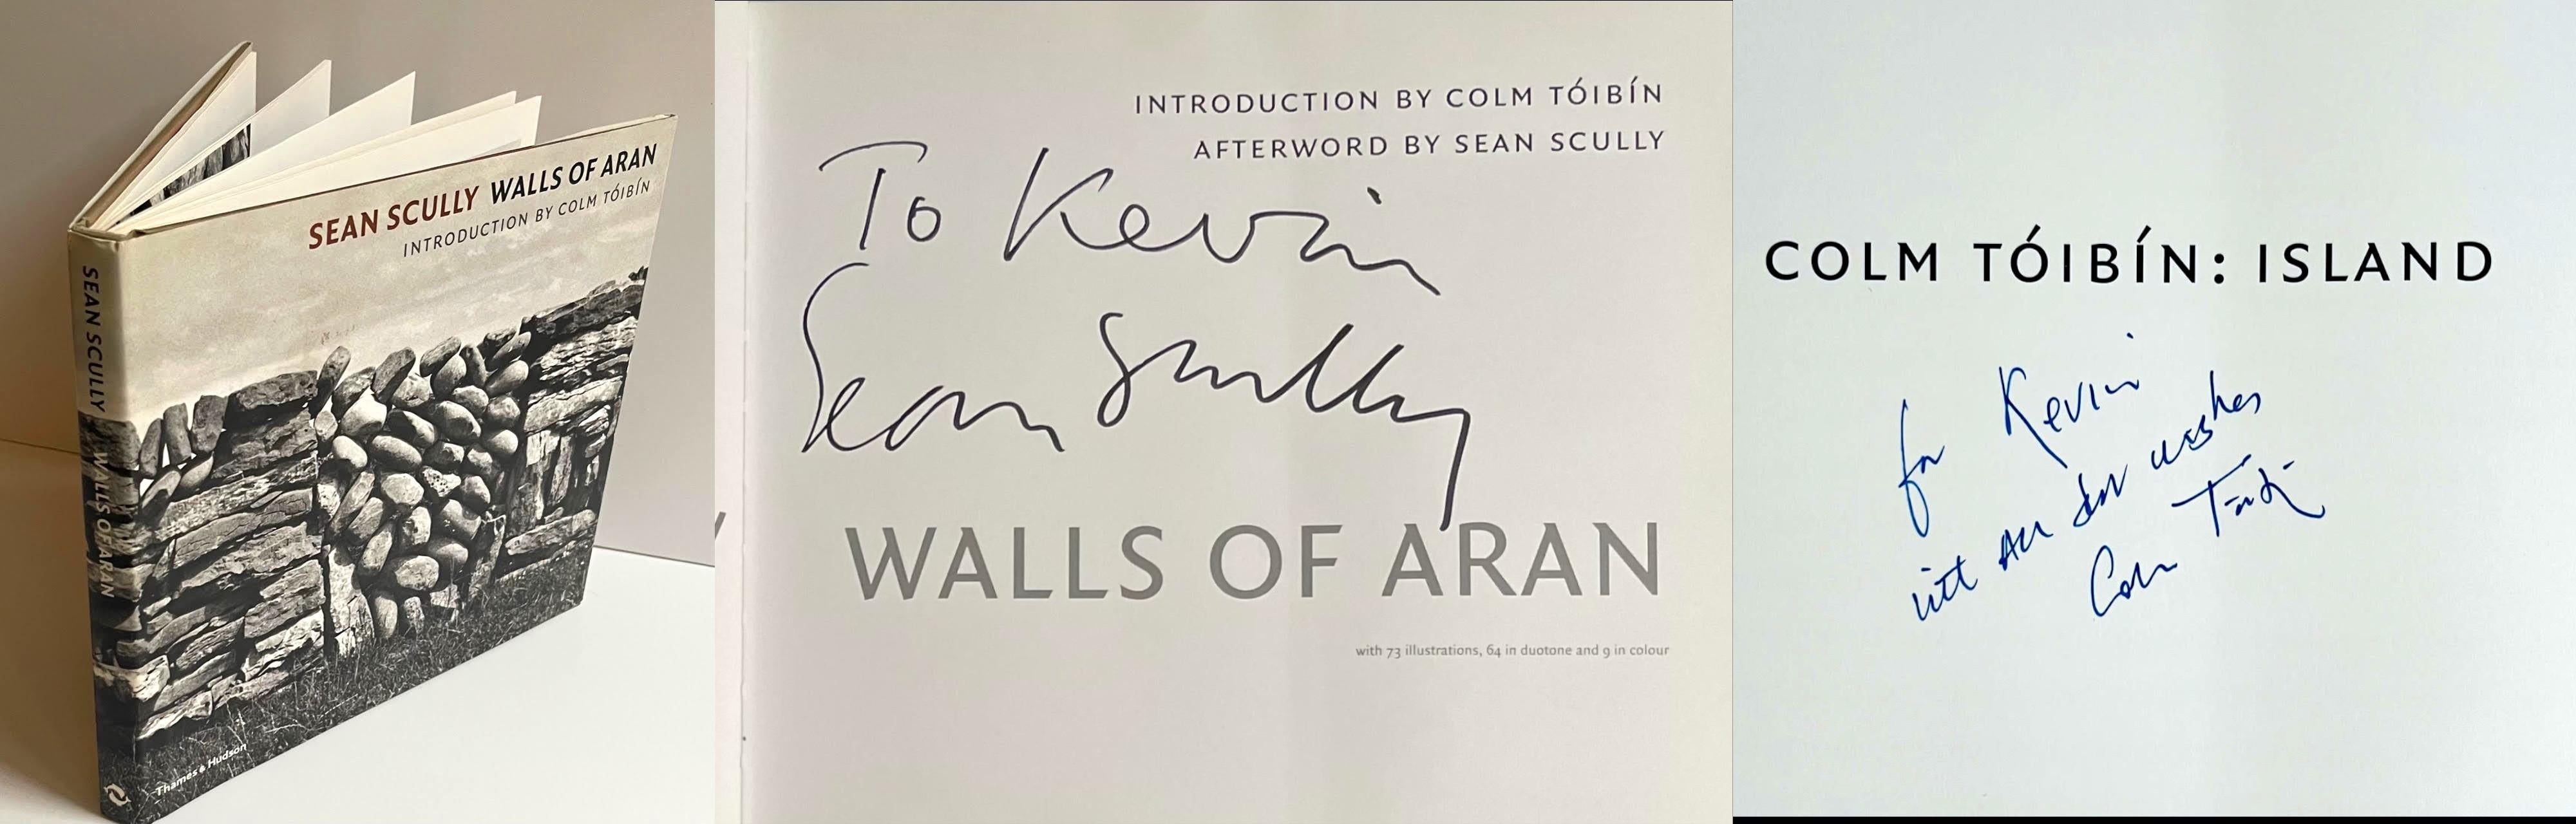 Wands of Aran Buch Hand signiert und beschriftet von BOTH Sean Scully und Colm Toibin